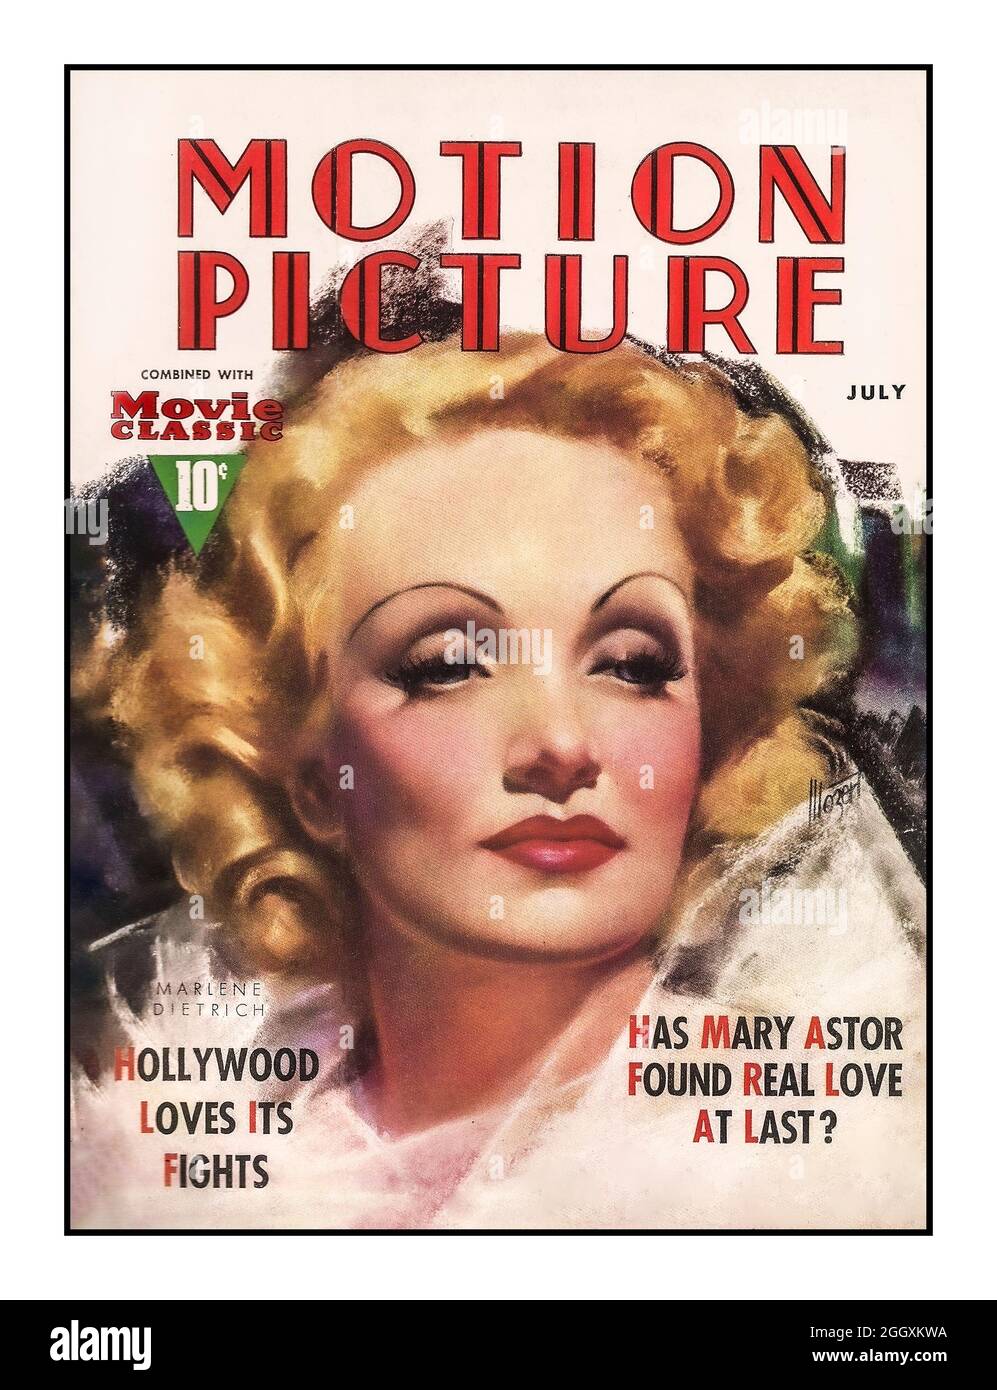 Marlene Dietrich Vintage 1937 Movie Magazine 'Motion Picture' kombiniert mit Movie Classic zu einem Preis von 10 Cent mit Marlene Dietrichs berühmter Femme Fatale-Filmstar auf dem Frontcover. Stockfoto